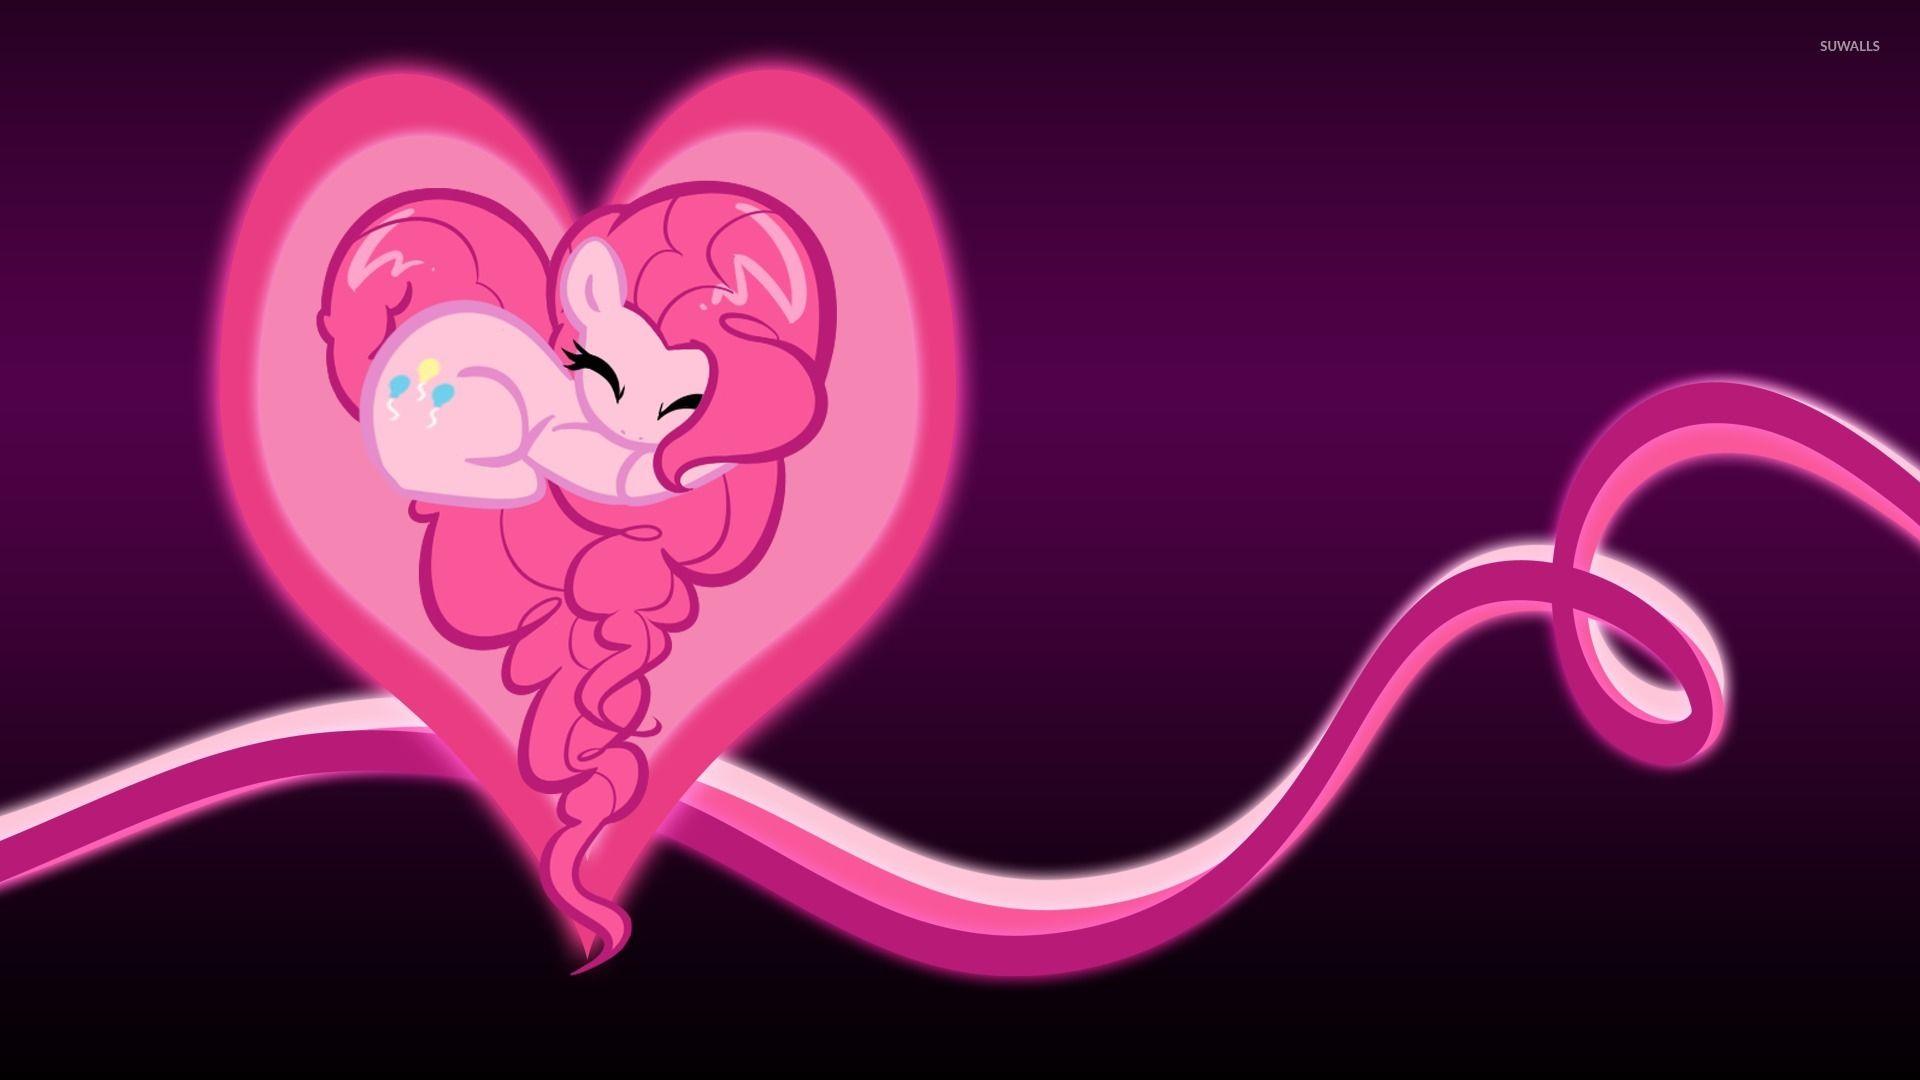 Pinkie Pie in a glowing heart Little Pony wallpaper